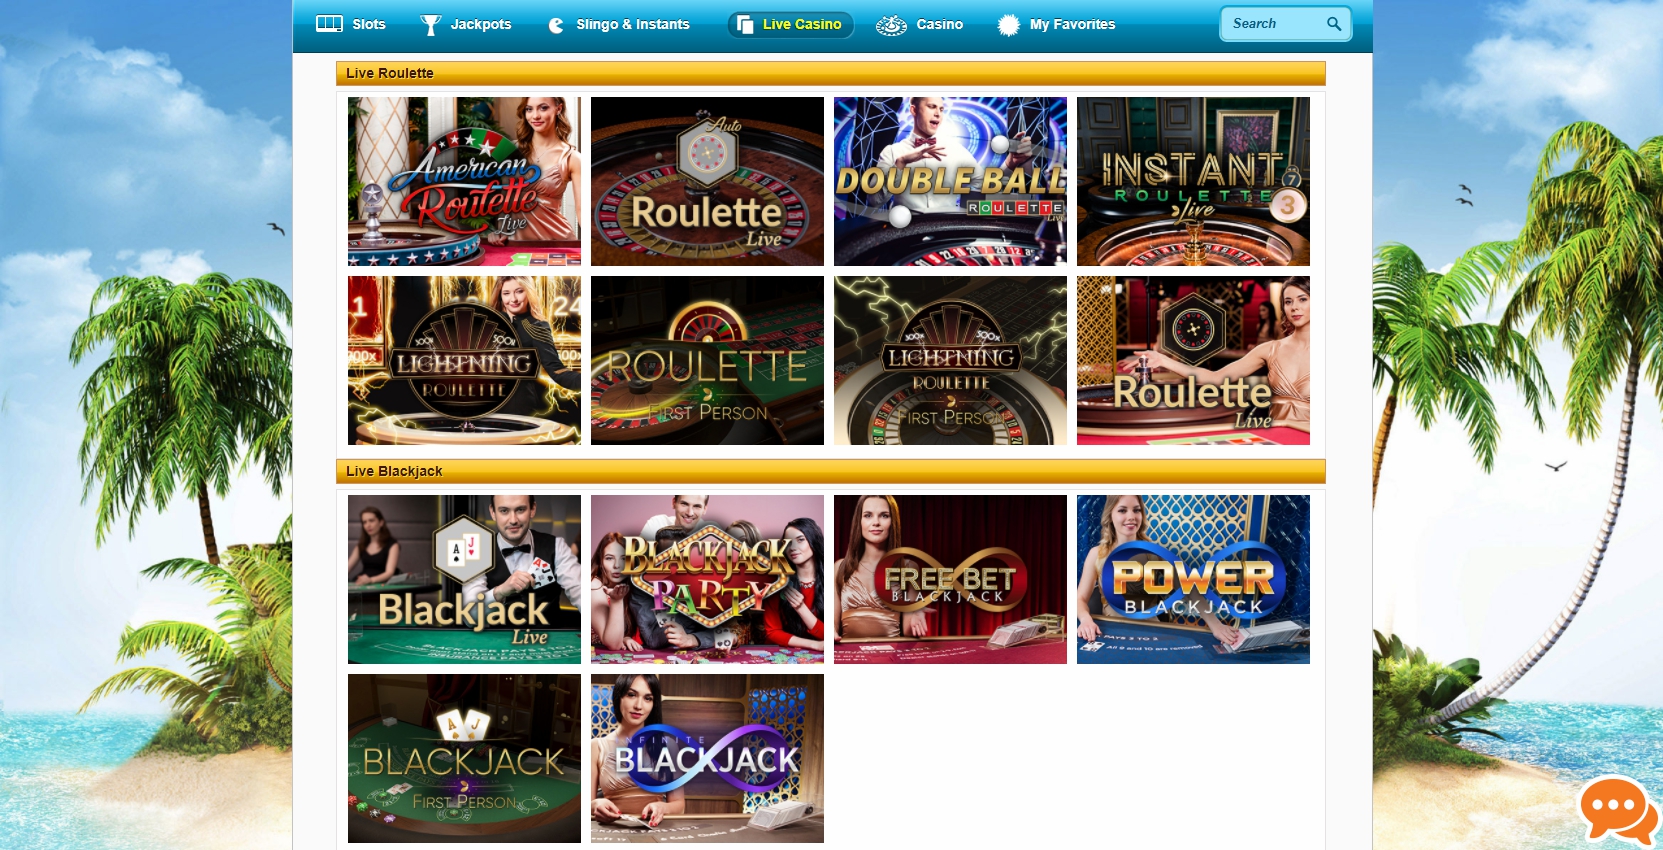 PlaySunny UK Casino Live Dealer Games